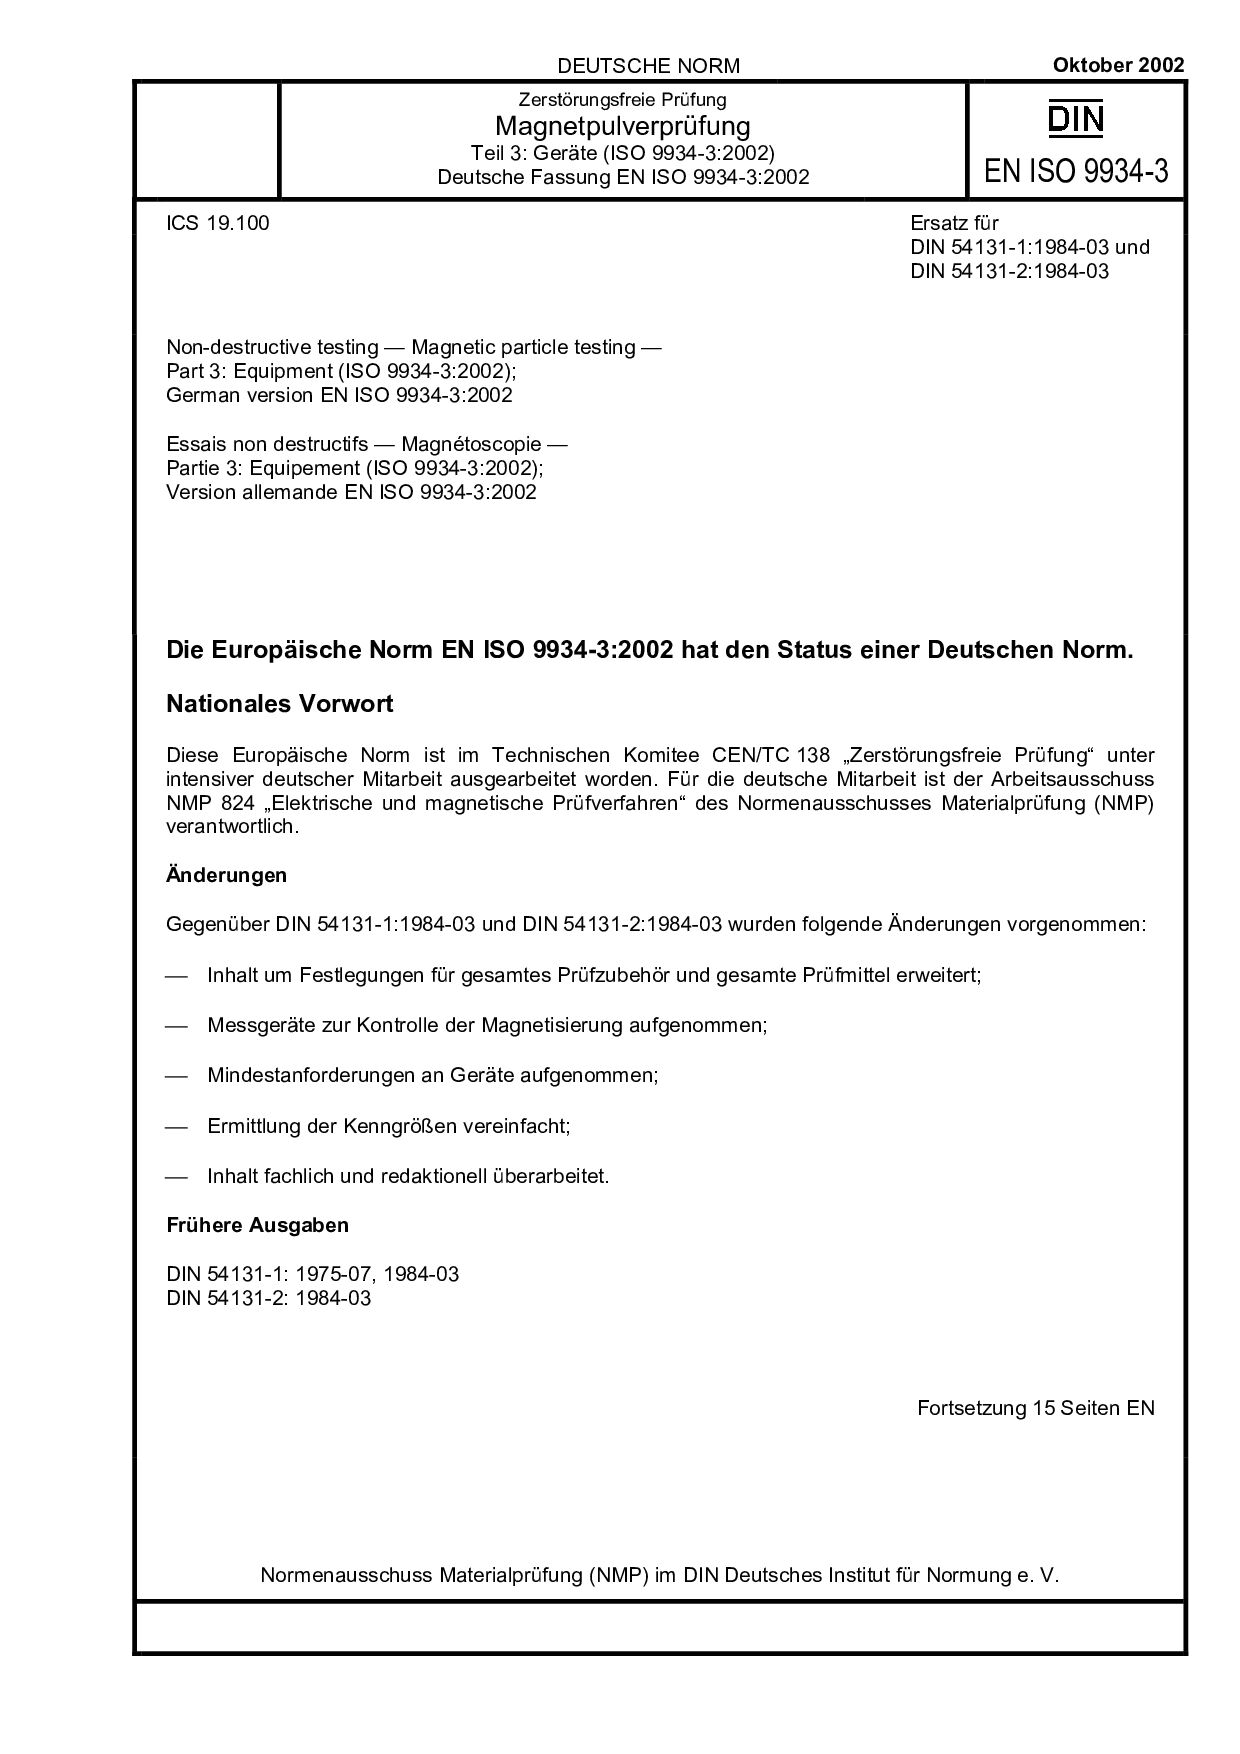 DIN EN ISO 9934-3:2002